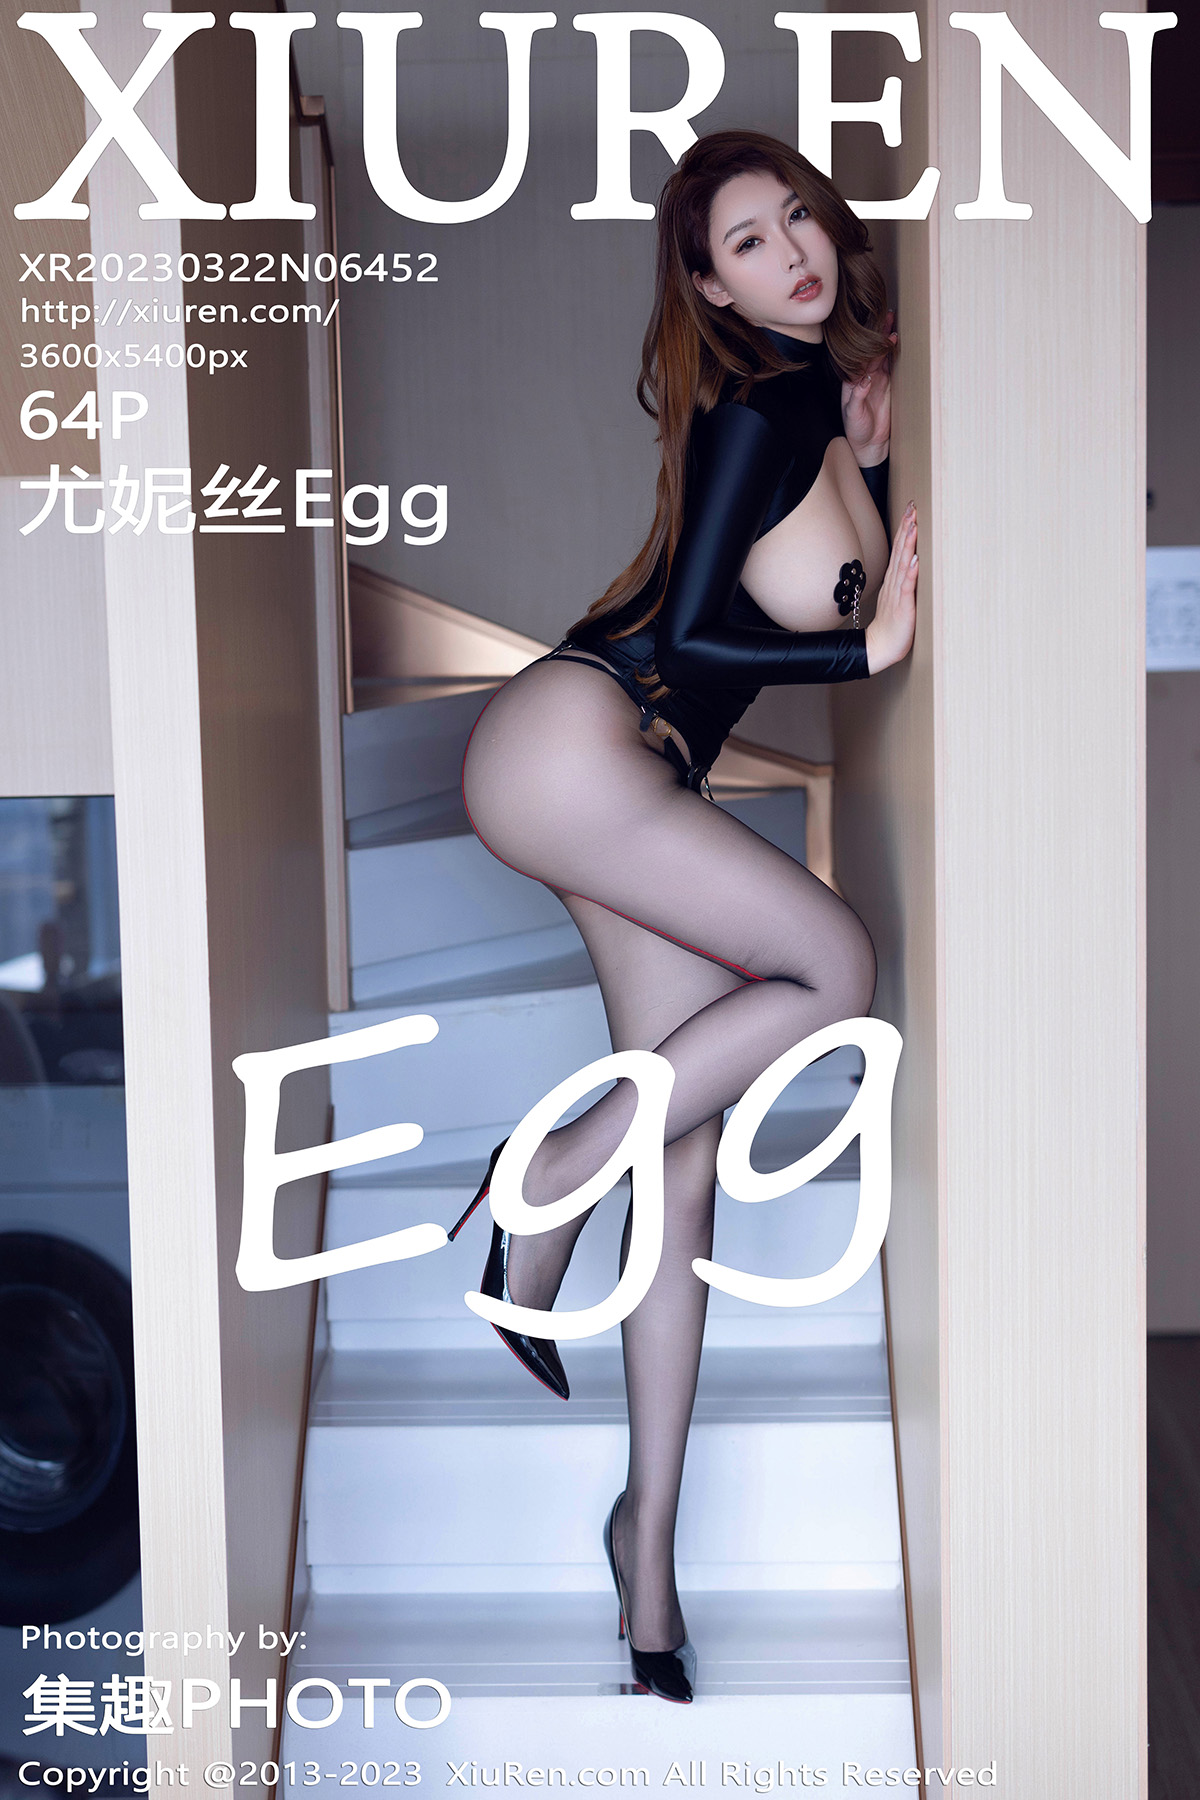 秀人 [XIUREN] 2023.03.22 尤妮丝Egg